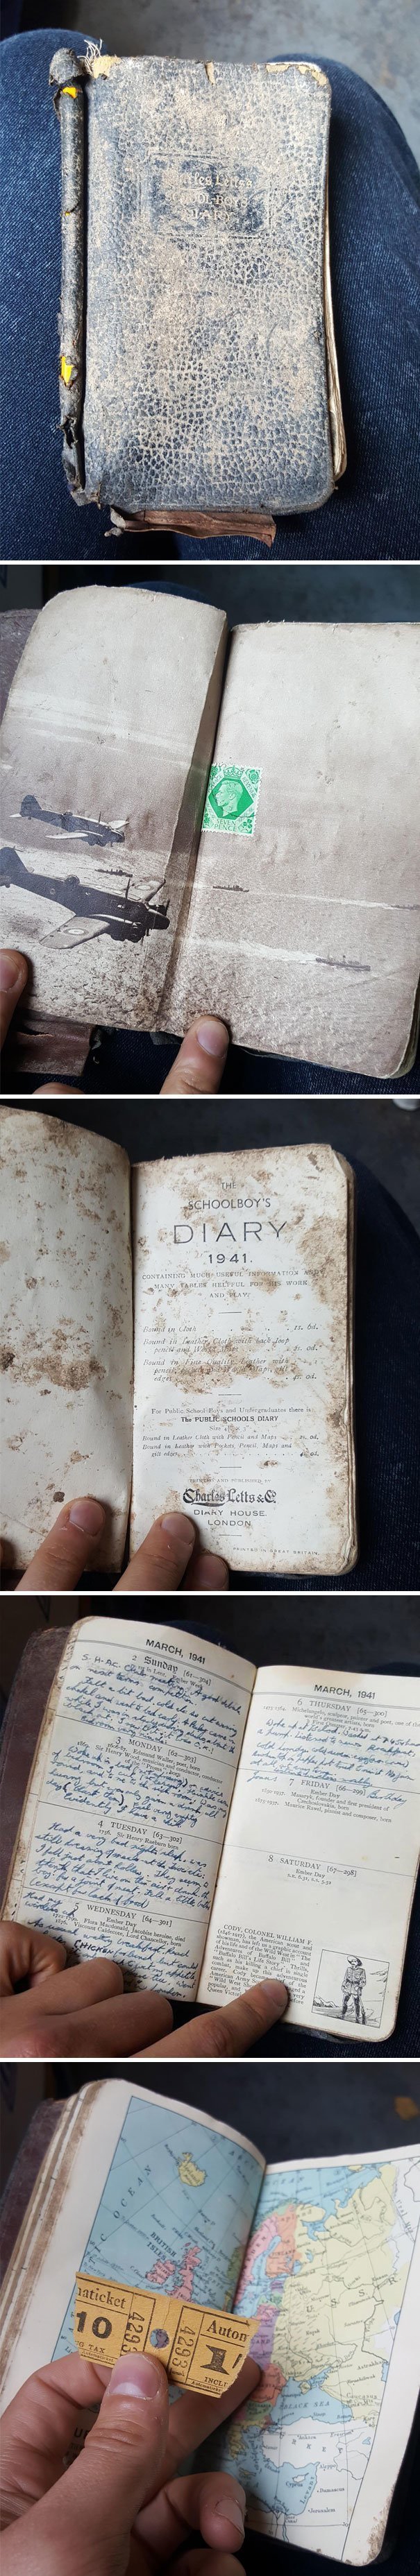 4. Заполненный дневник школьника, 1941 год, найден сотрудником компании по утилизации отходов